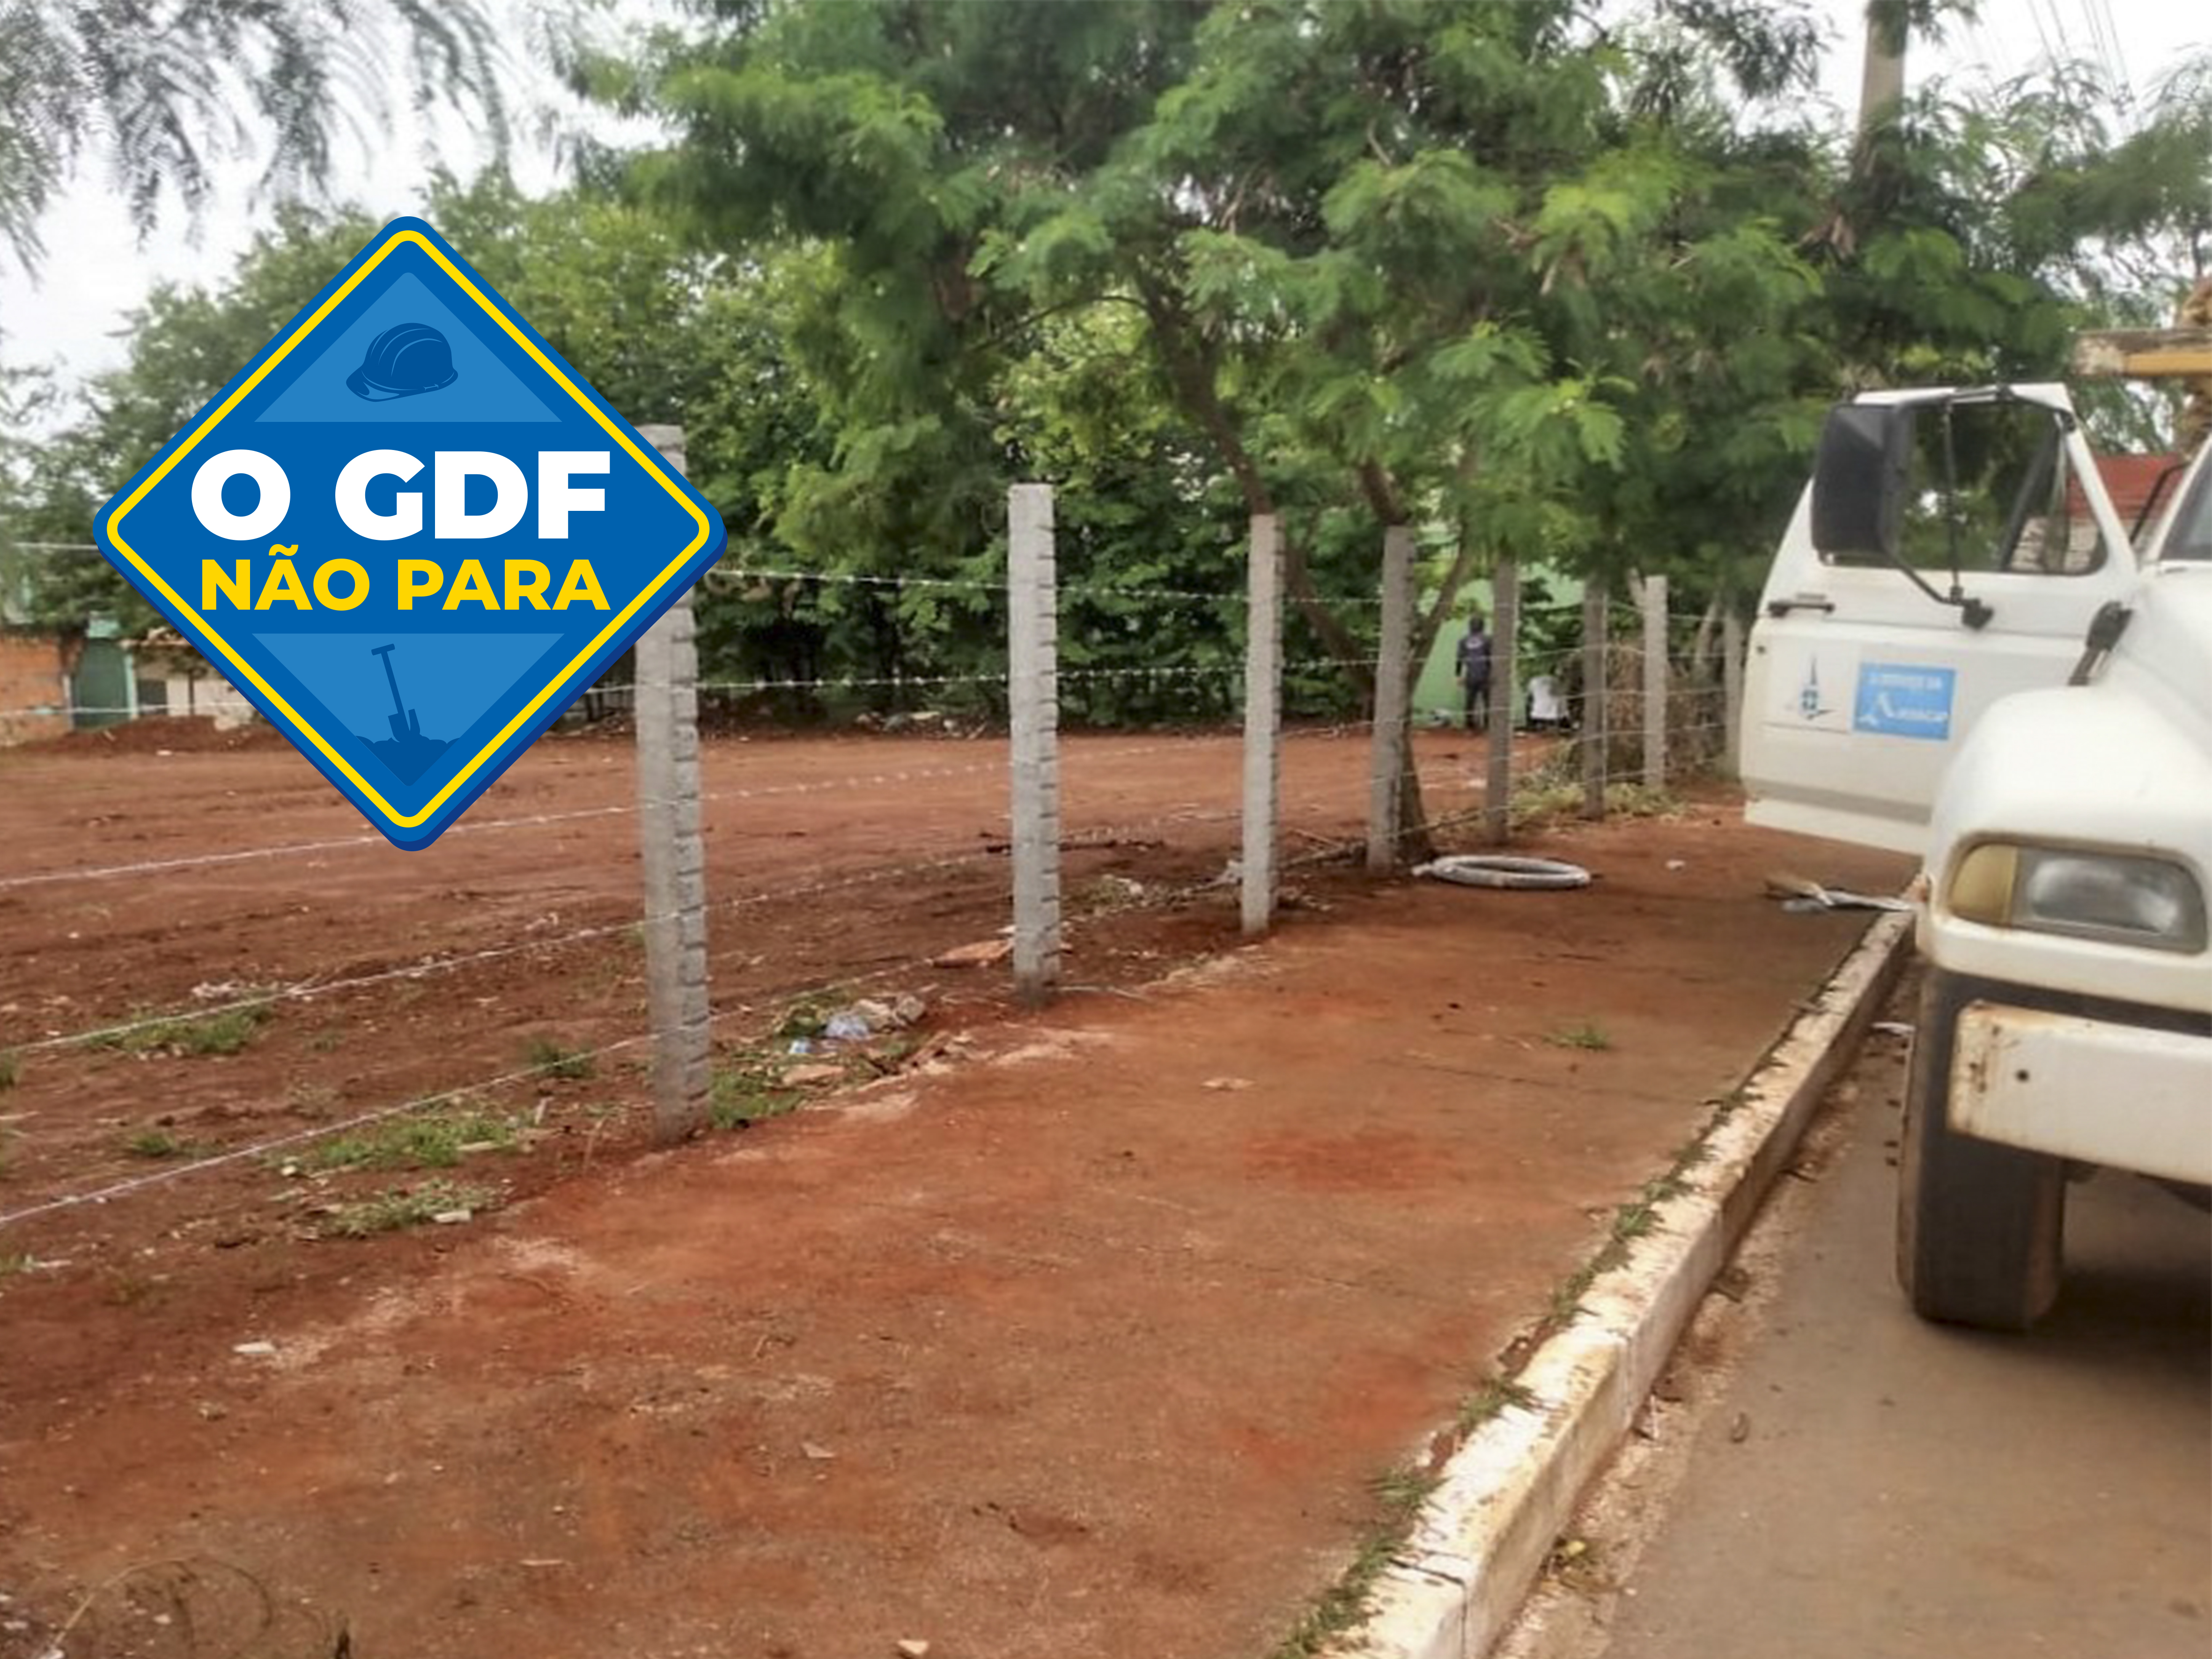 Área pública cercada pelo GDF Presente em Ceilândia era usada irregularmente para descarte de entulhos e inservíveis | Foto: Divulgação/GDF Presente